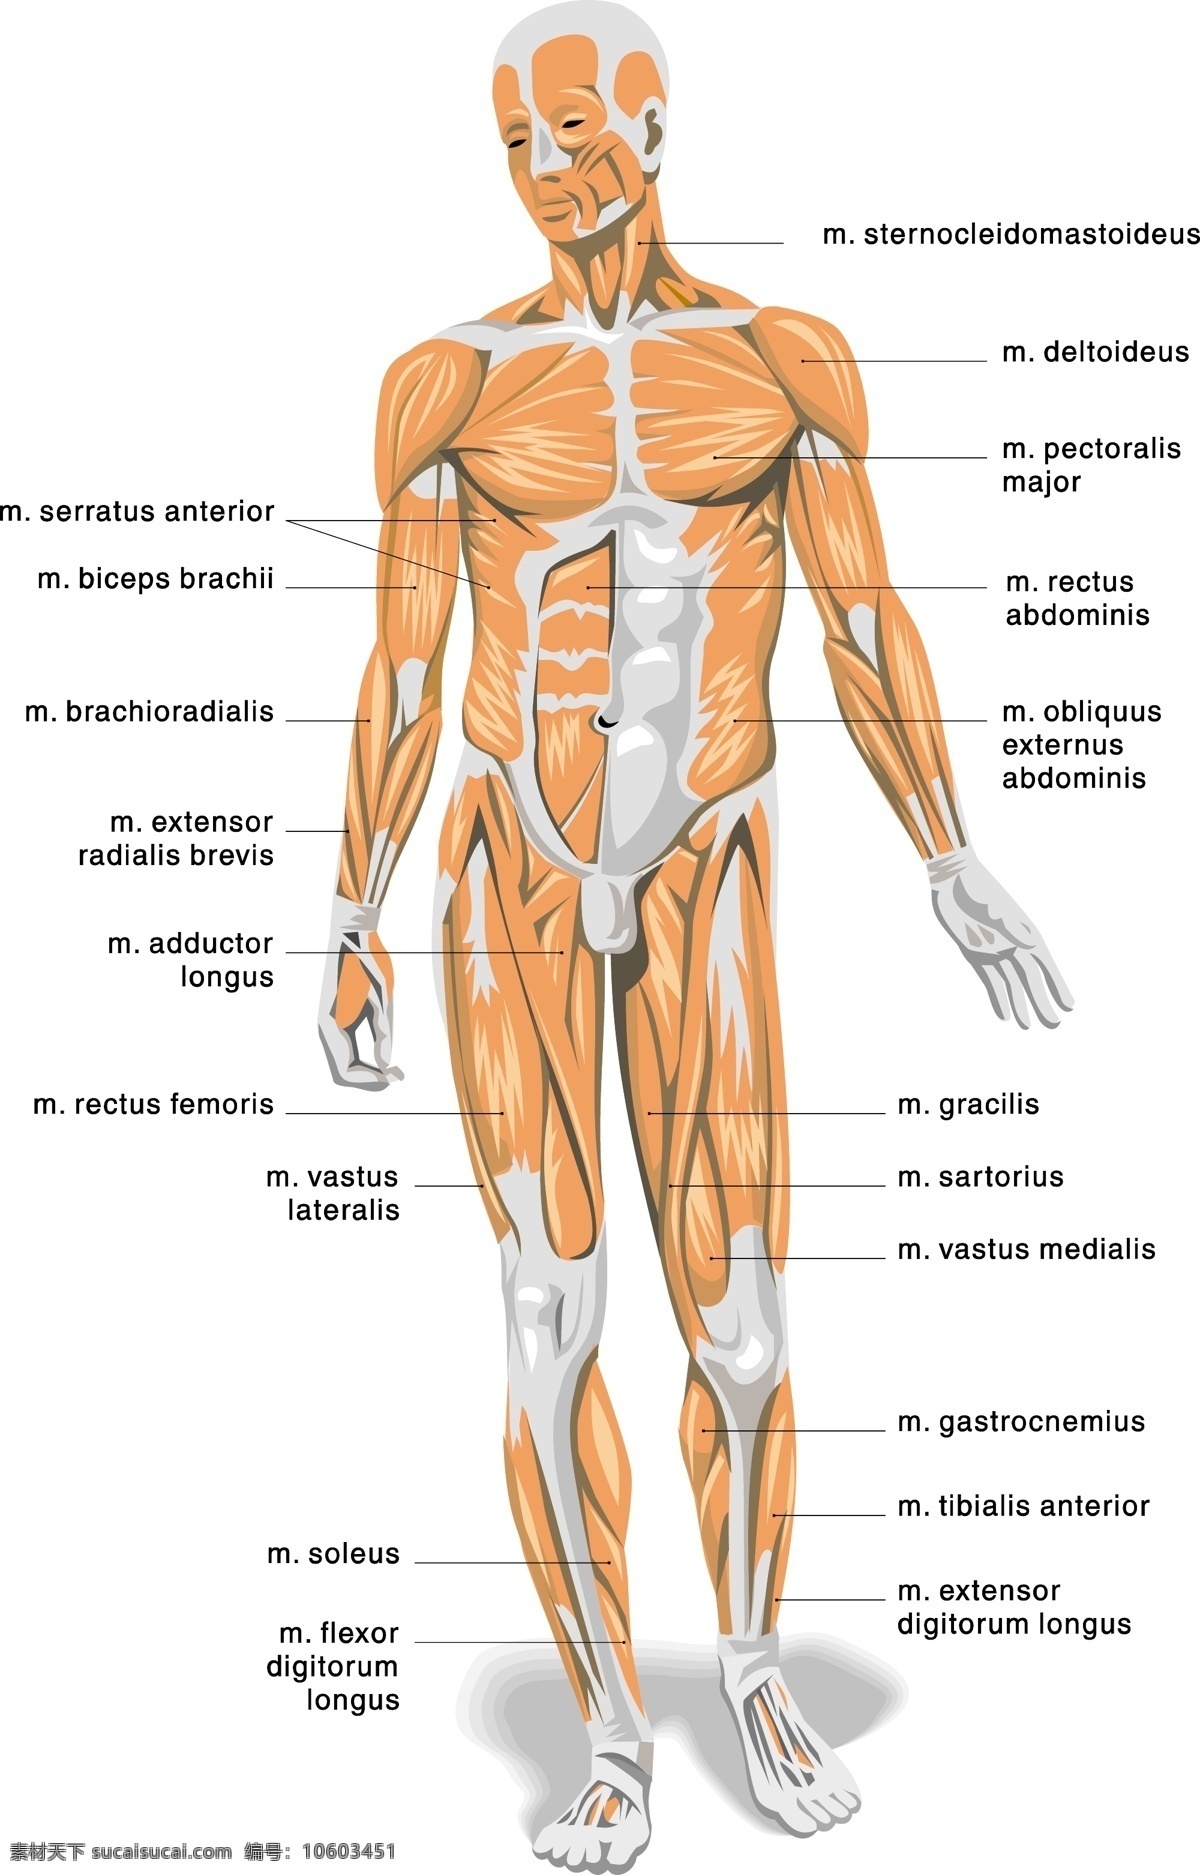 人体 解剖学 器官 展示 图 人体肌肉组织 人体骨骼图 人体血管图 神经元 人体解剖学 现代科技 医疗护理